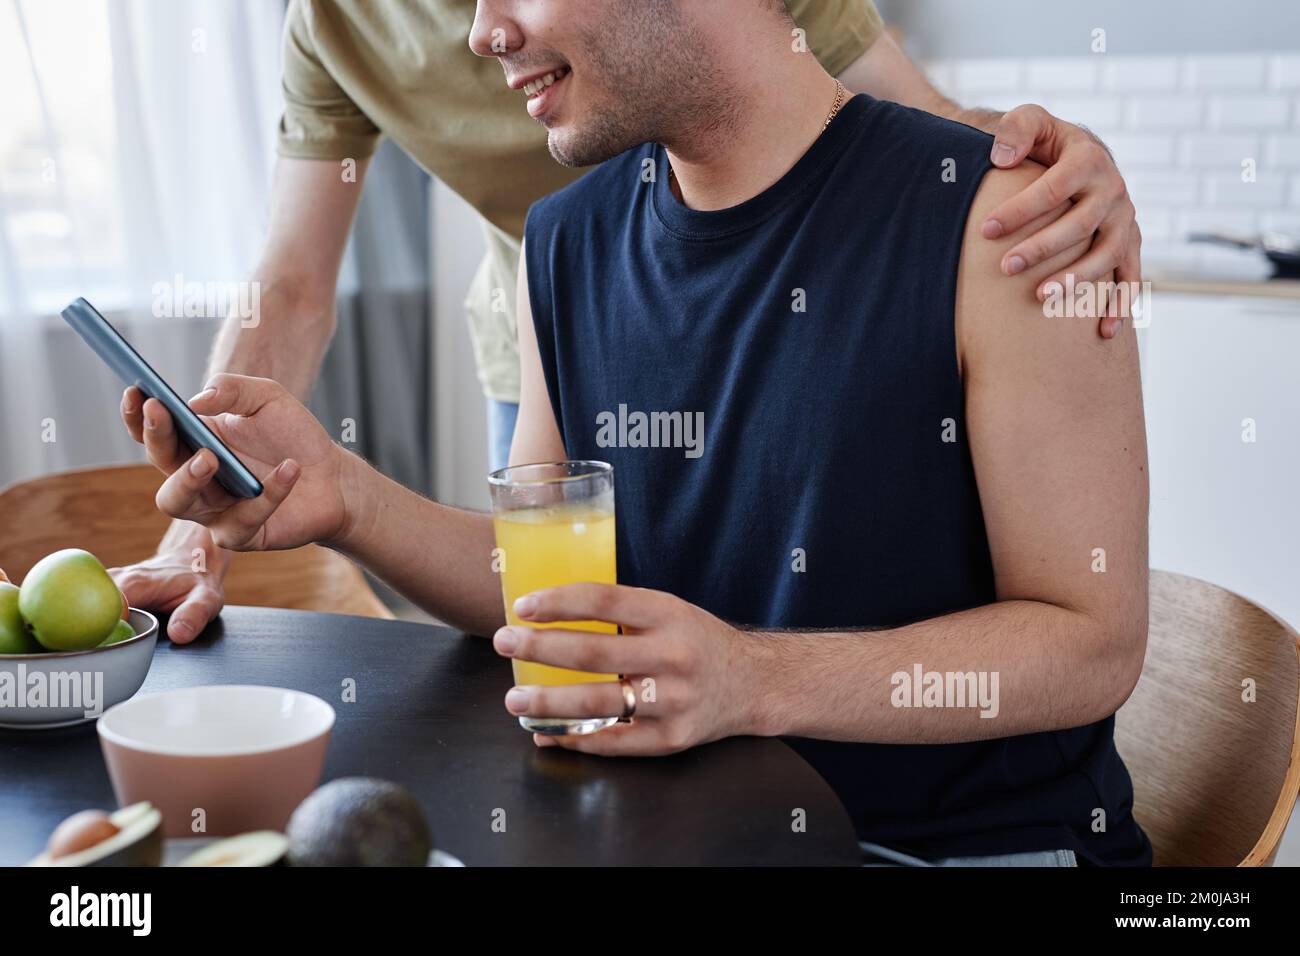 Vue latérale gros plan de jeunes couples gays prenant le petit déjeuner le matin et tenant un smartphone Banque D'Images